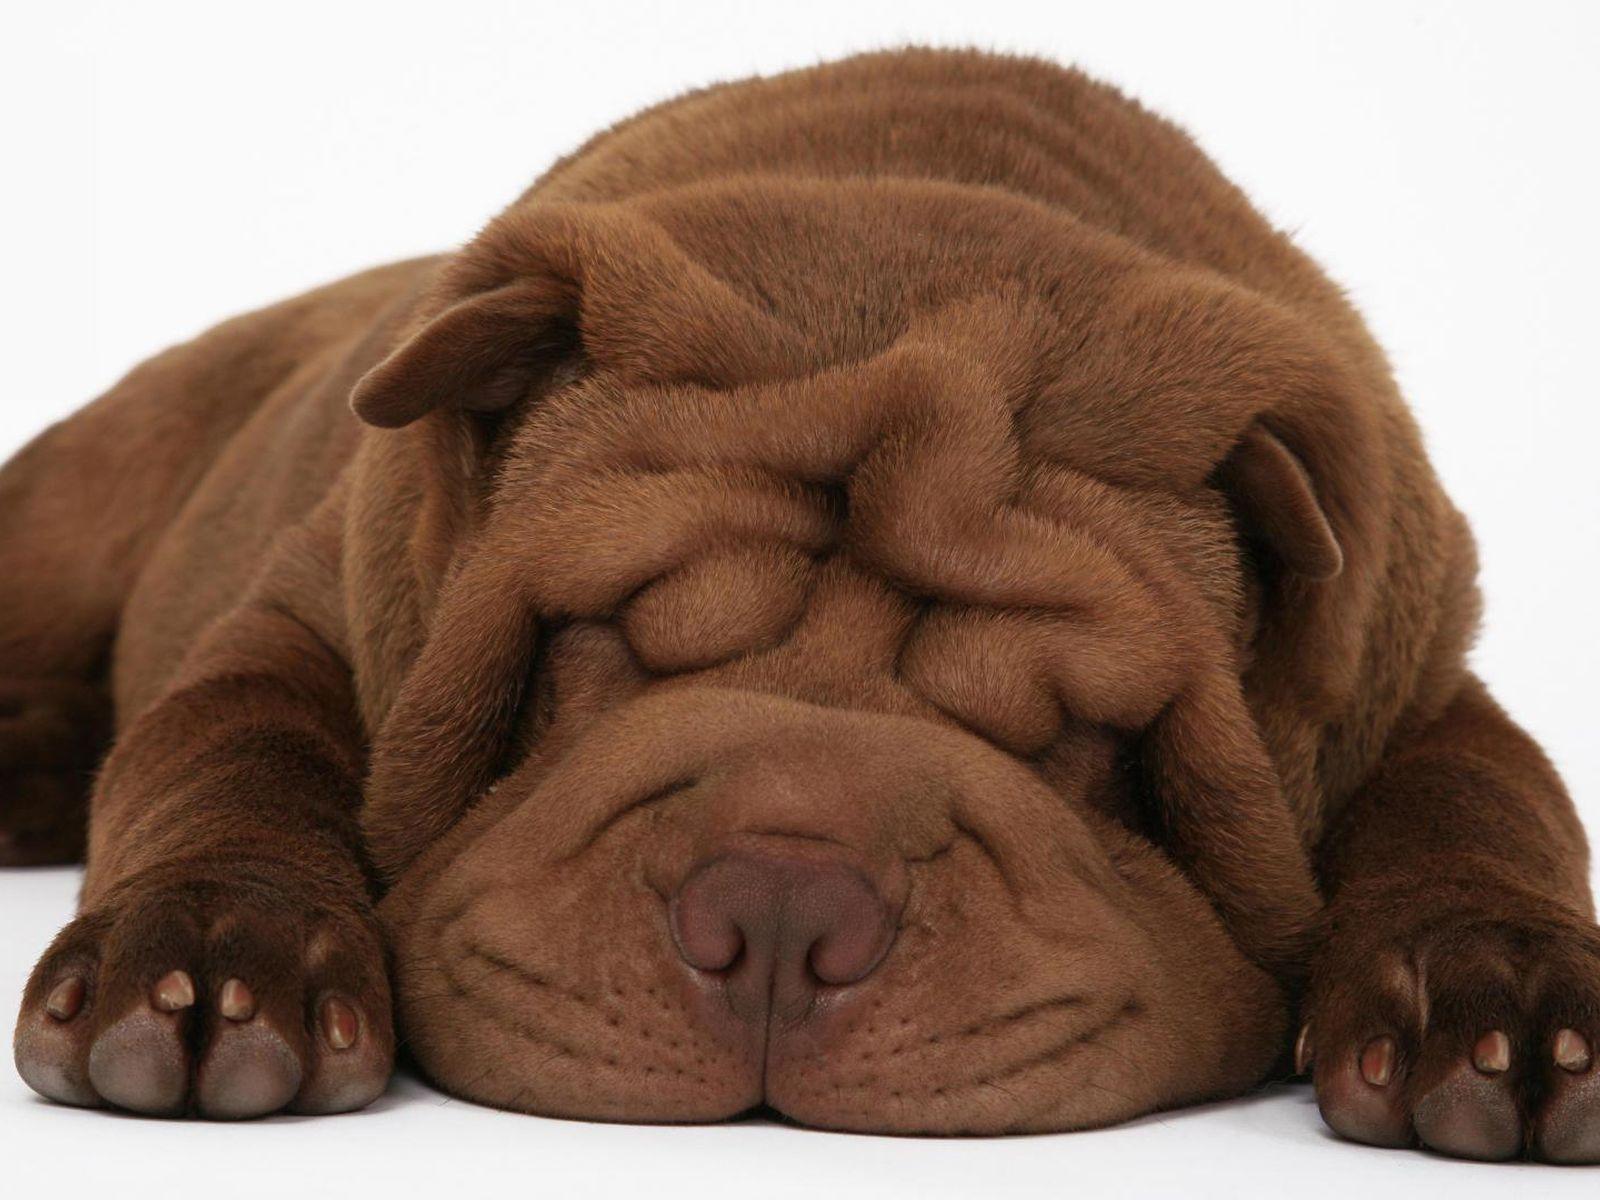 Big Ugly And Sleepy Dog (id: 69797)